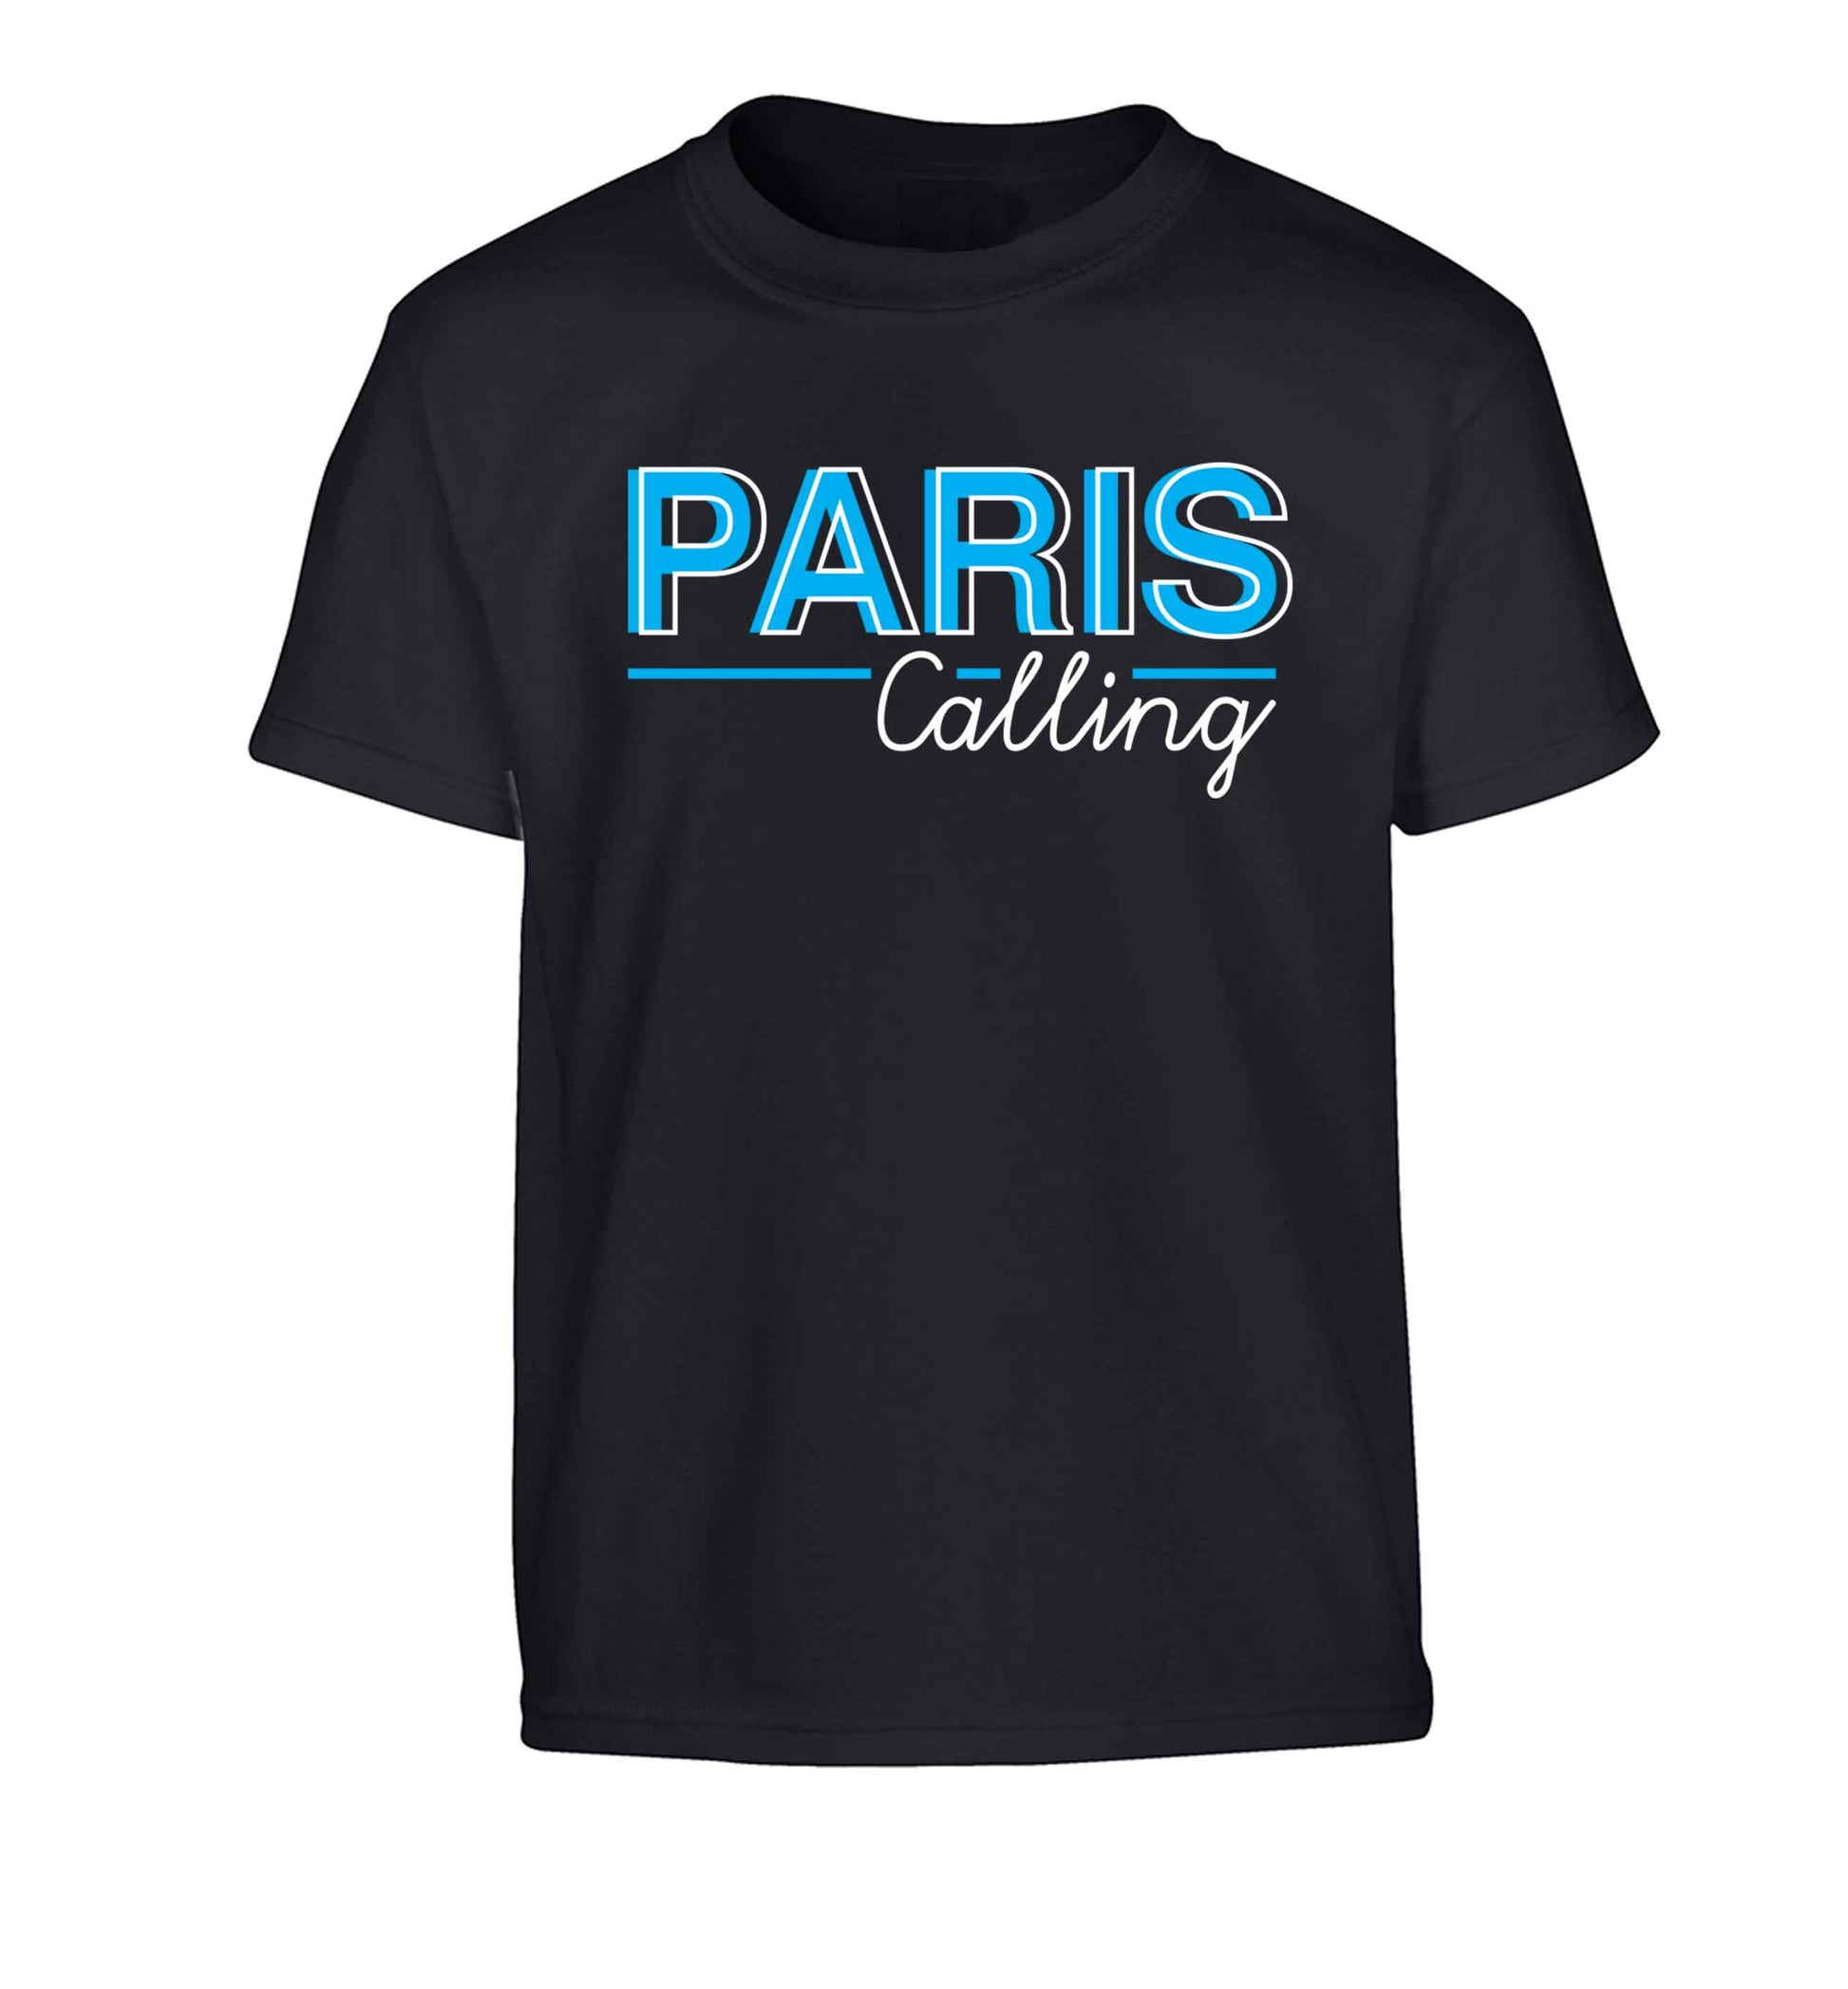 Paris calling Children's black Tshirt 12-13 Years